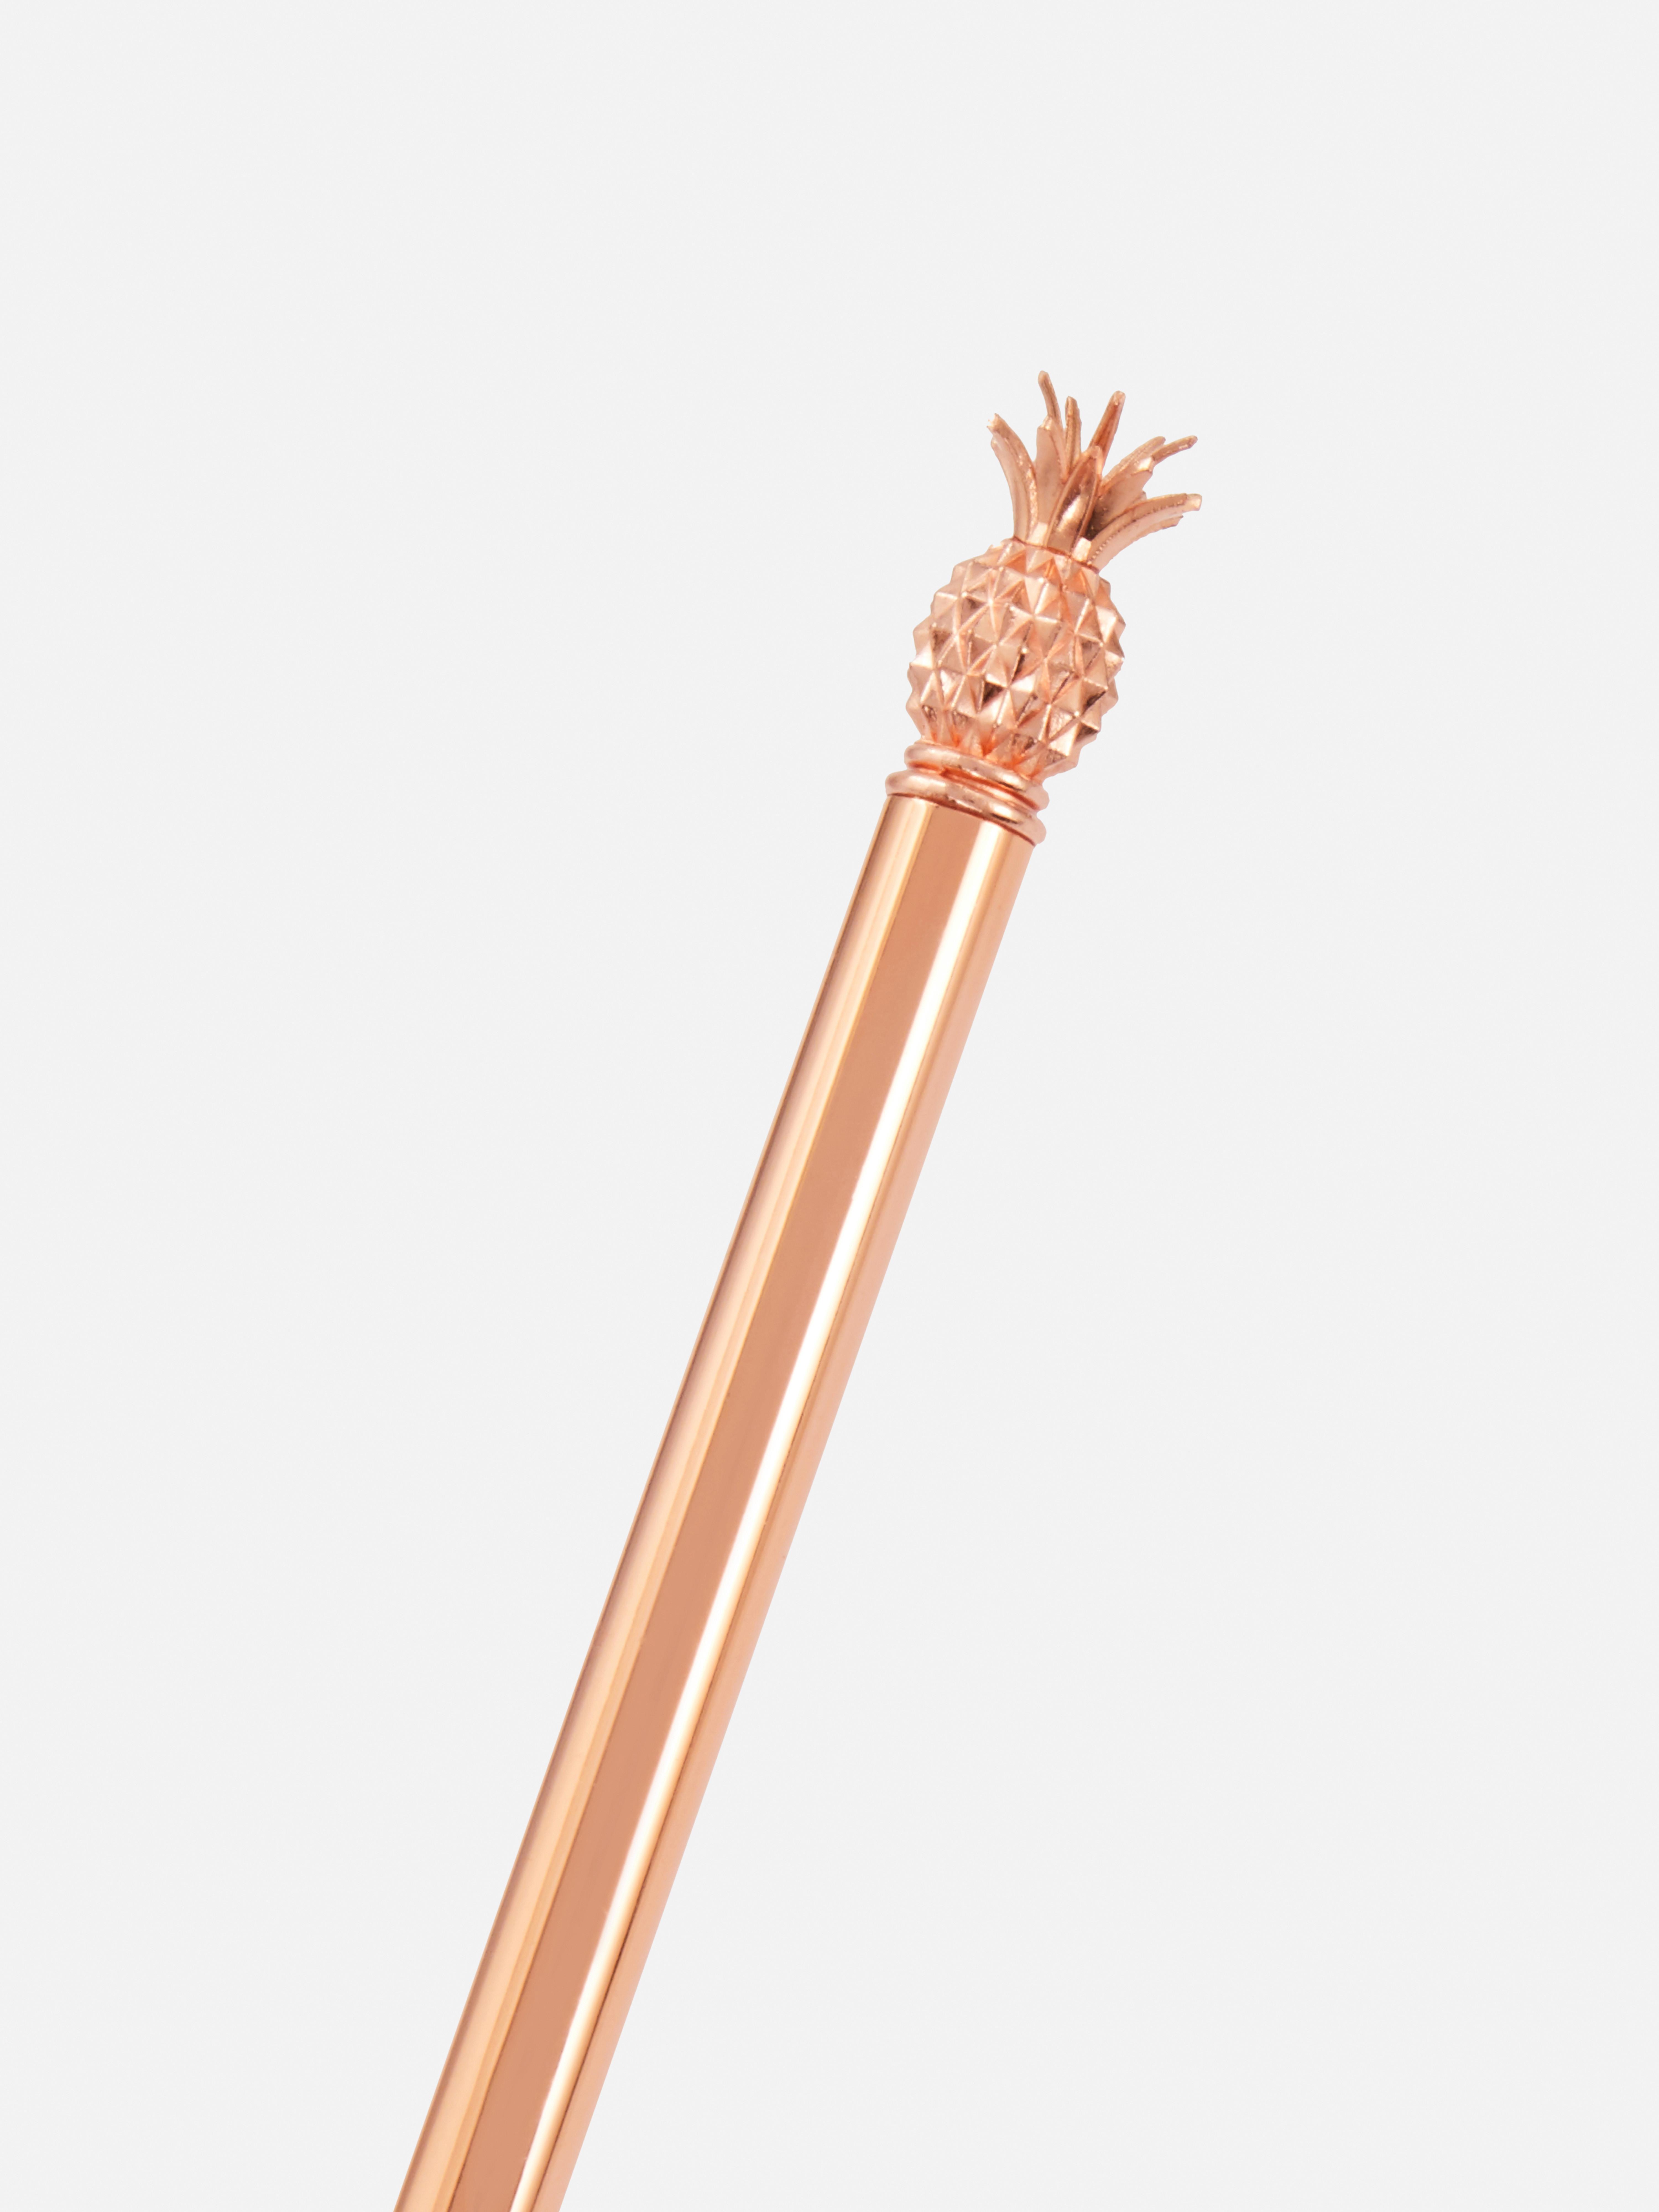 Rose Gold Pineapple Pen